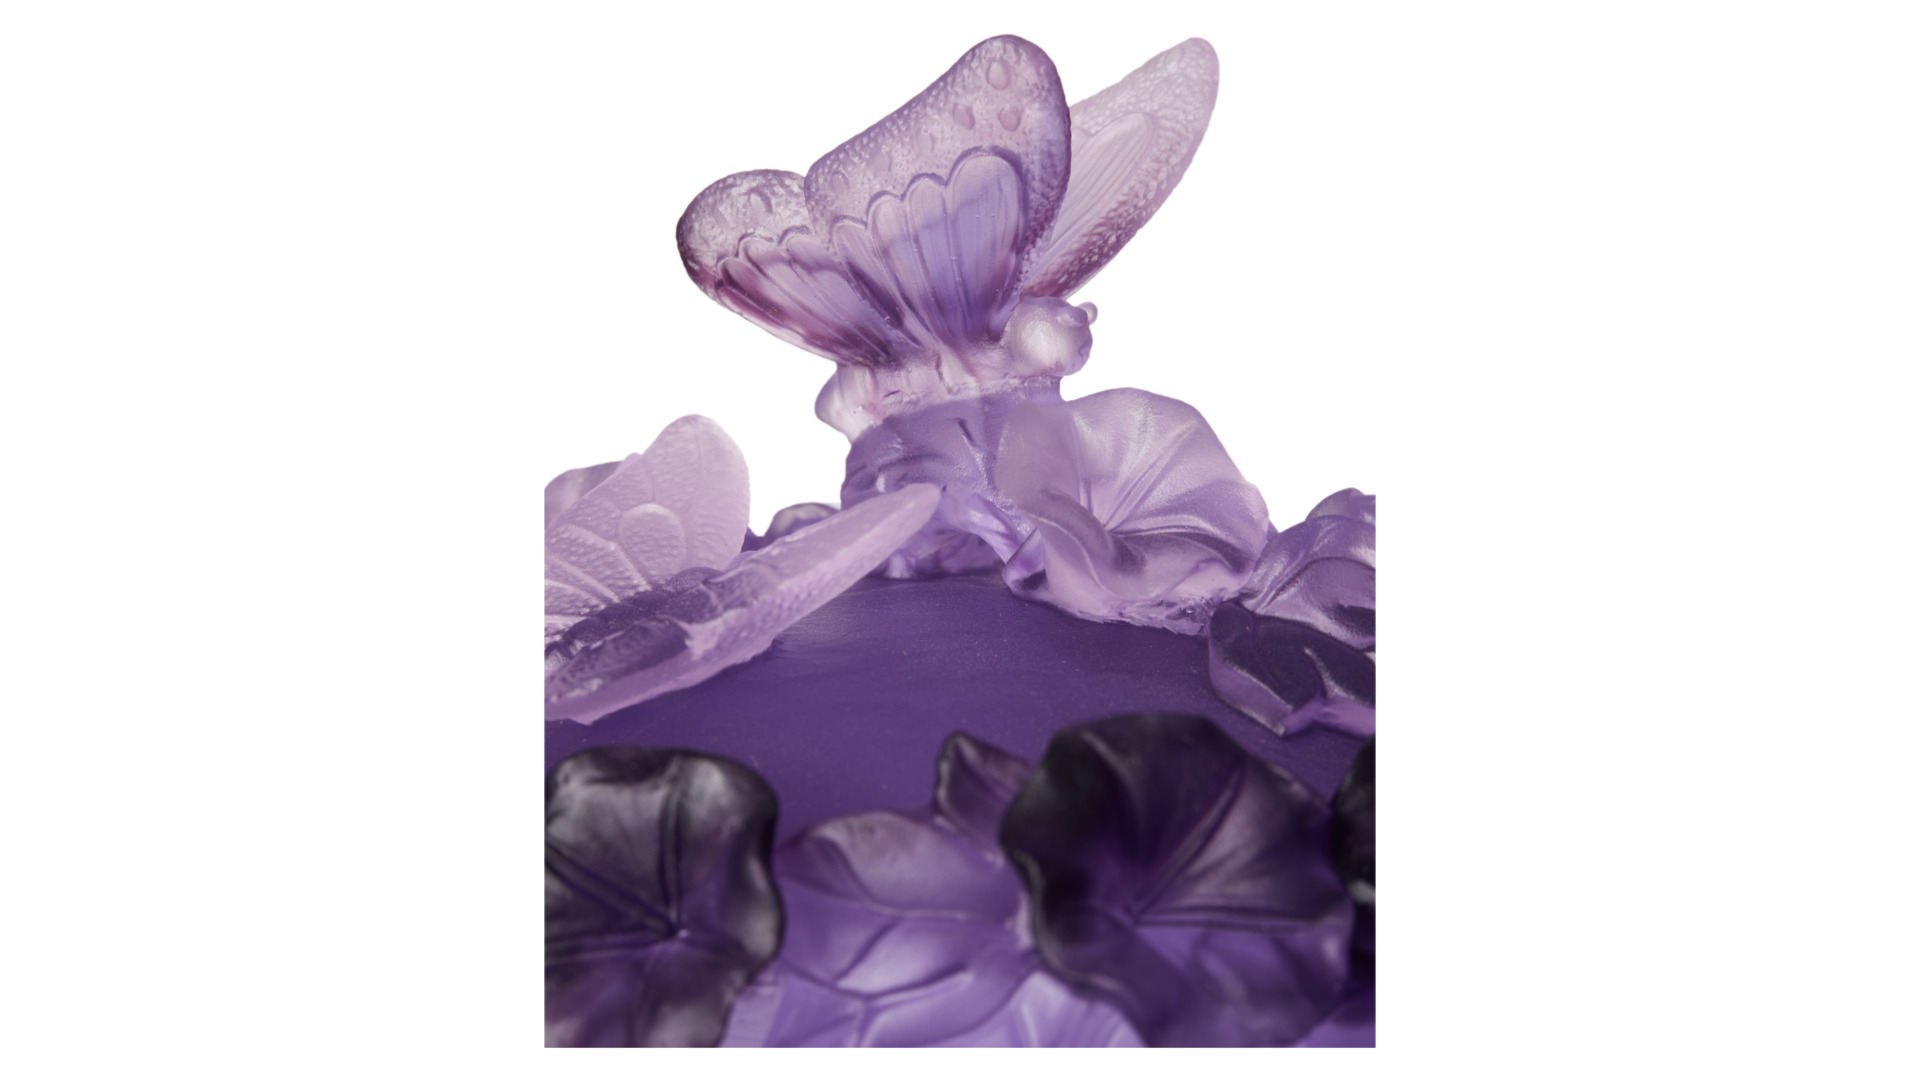 Конфетница Decor de table Бабочка 17 см, хрусталь, фиолетовая